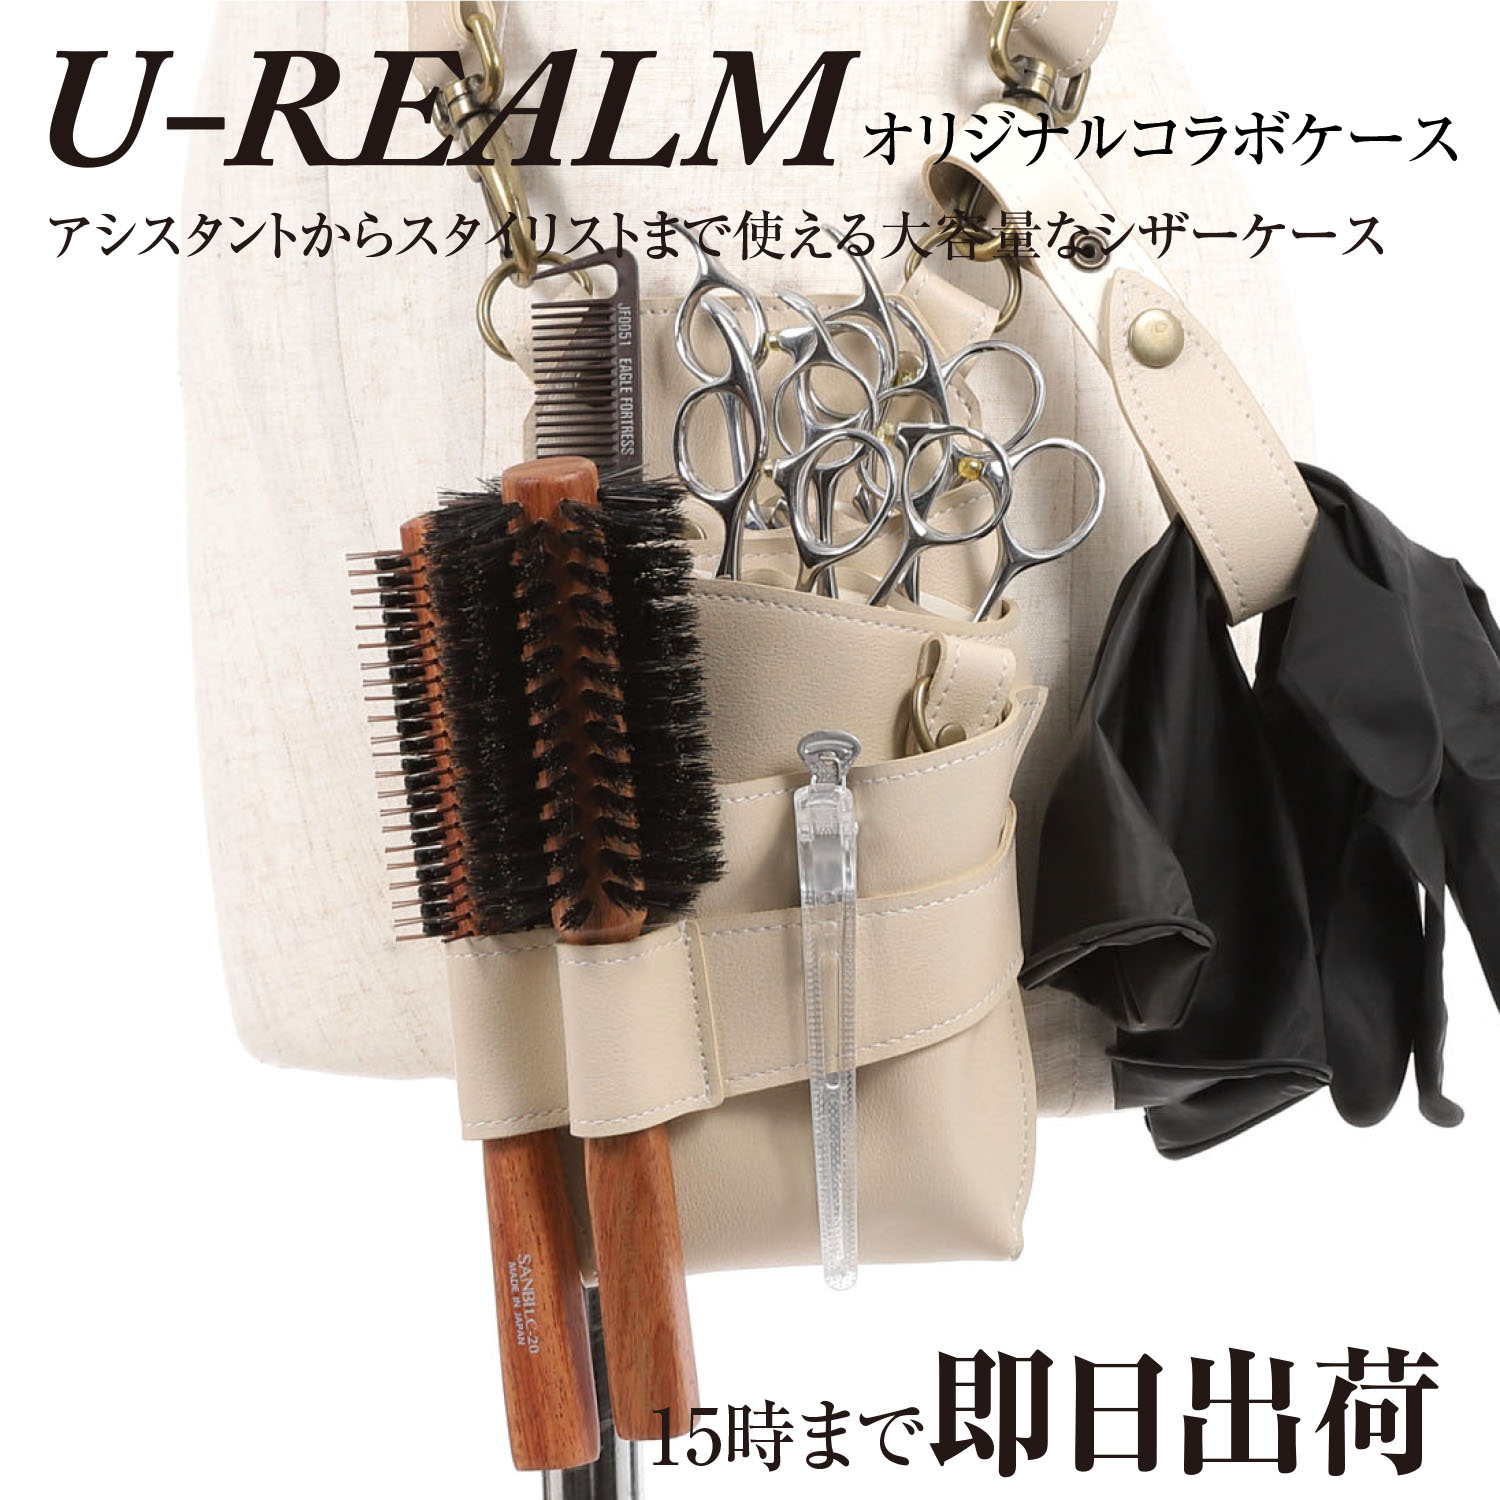 U-REALM オリジナル コラボ シザーケース アイボリー